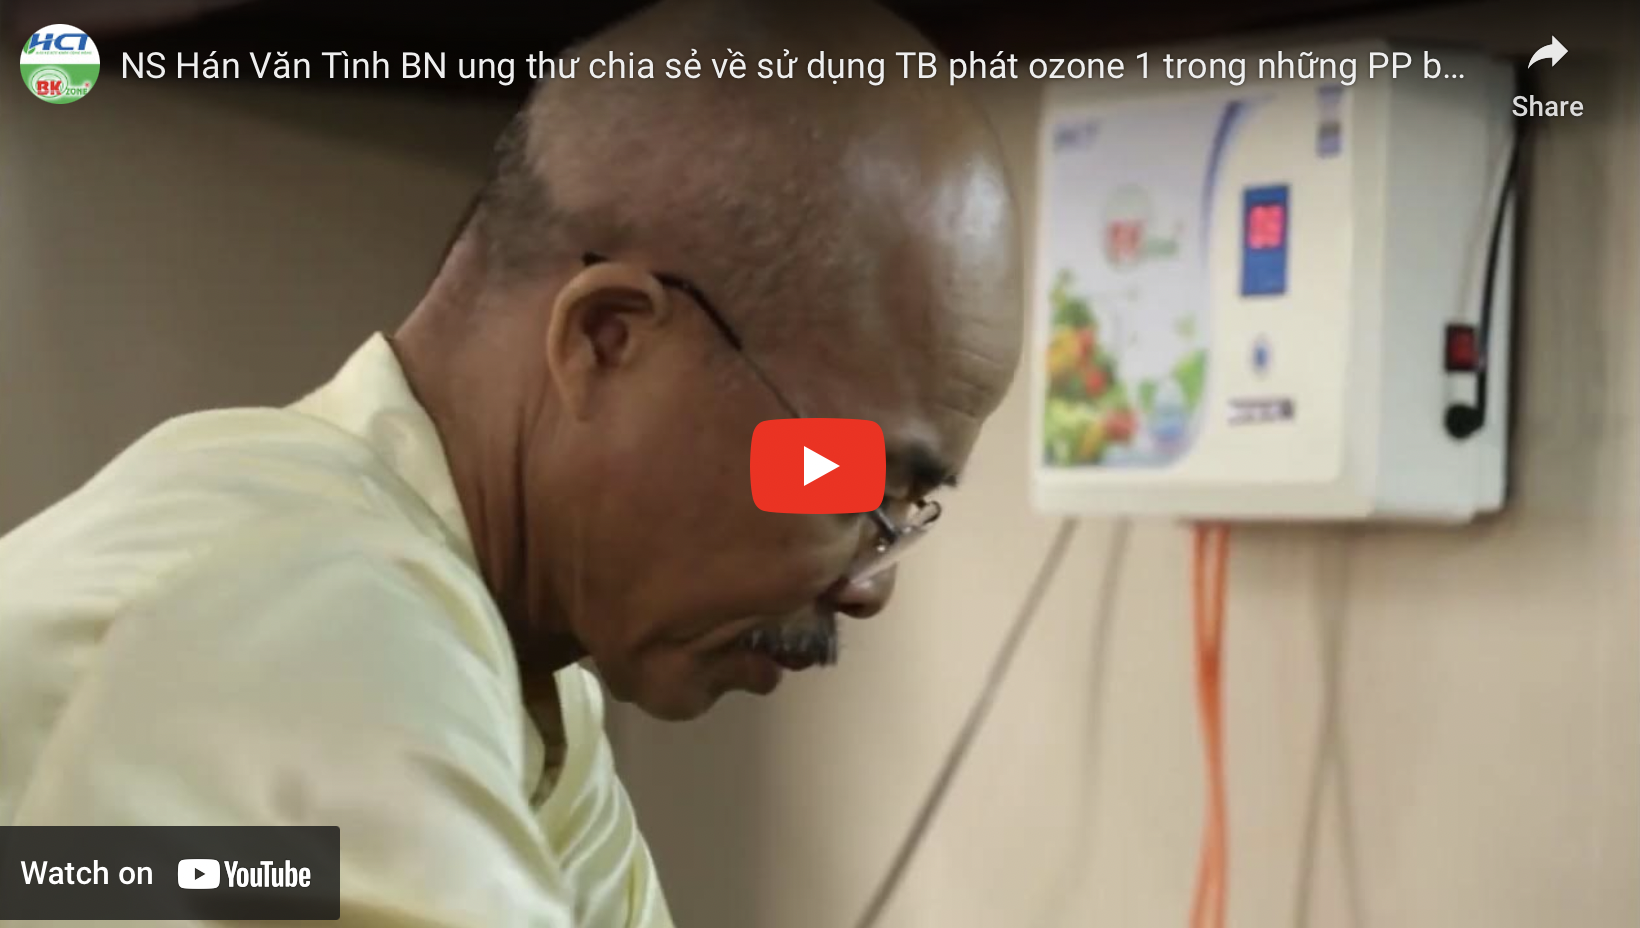 NS Hán Văn Tình BN ung thư chia sẻ về sử dụng TB phát ozone 1 trong những PP bảo vệ SK